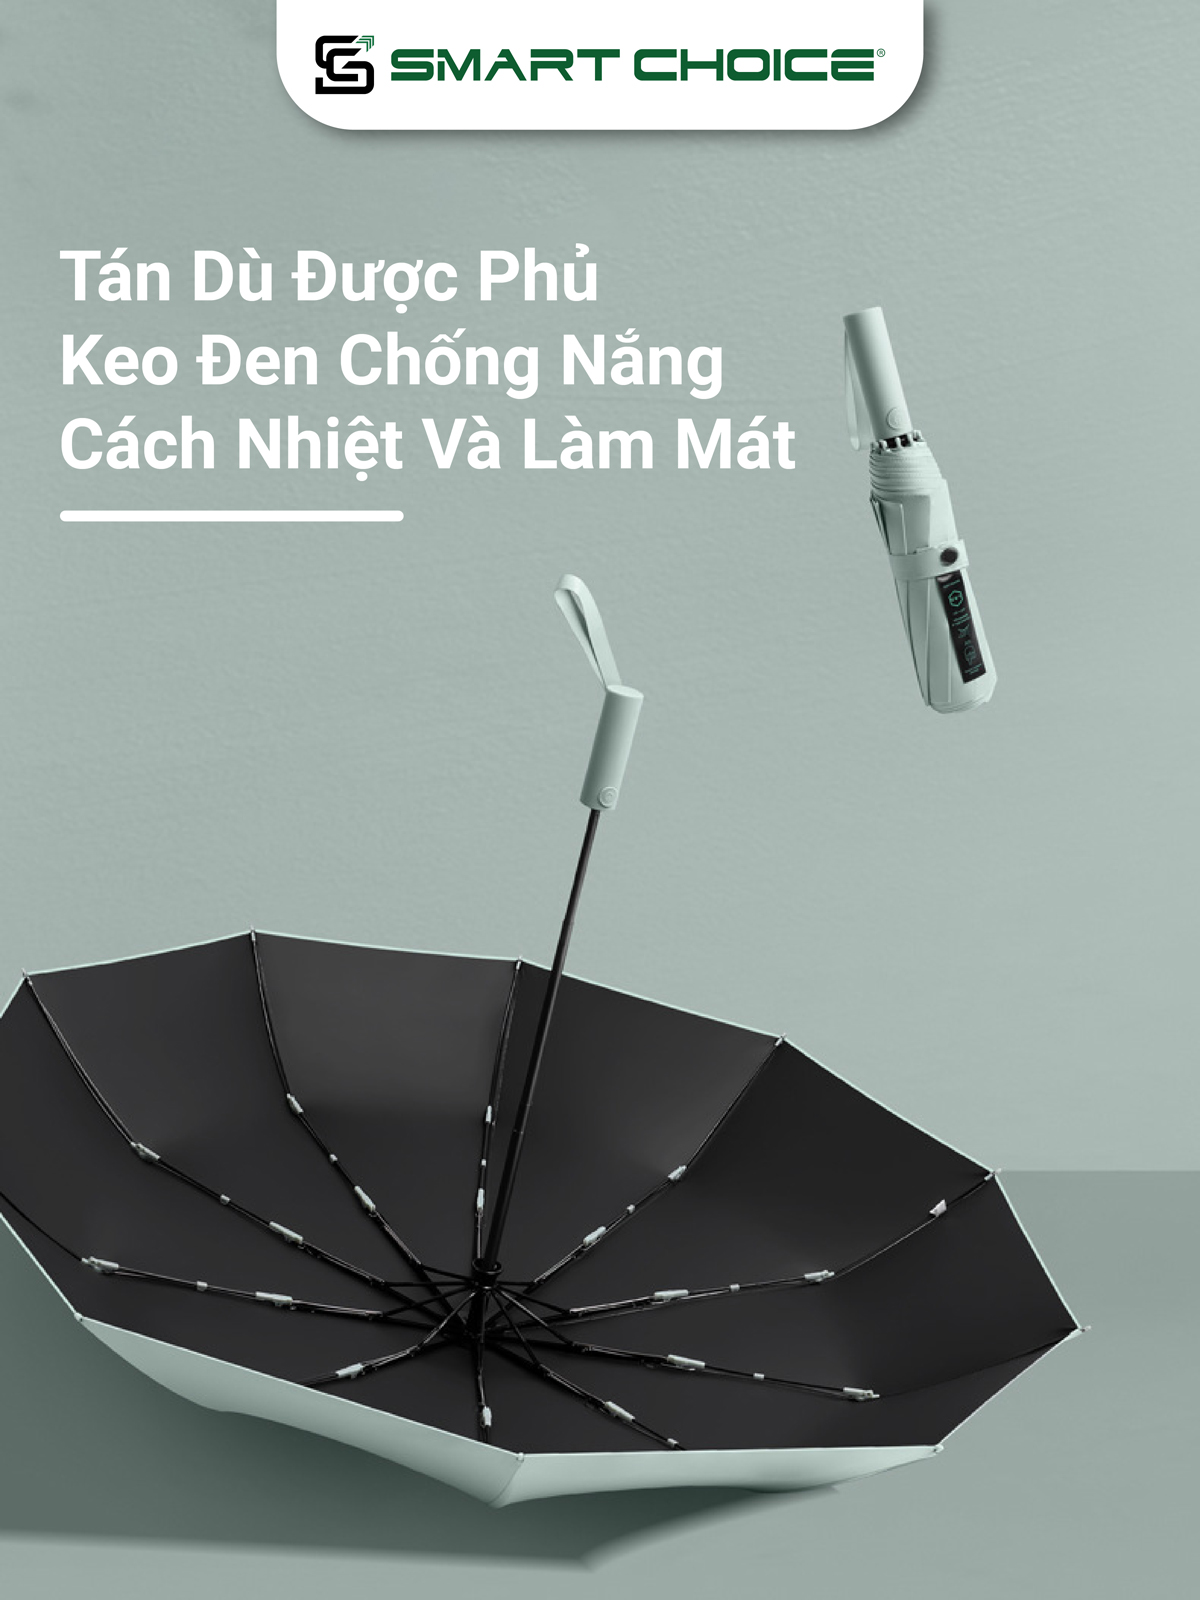 Ô Tự Động 10 Nan Che Mưa Vinyl SMARTCHOICE Tán Rộng 105cm 7 Màu Cao Cấp, Chính Hãng